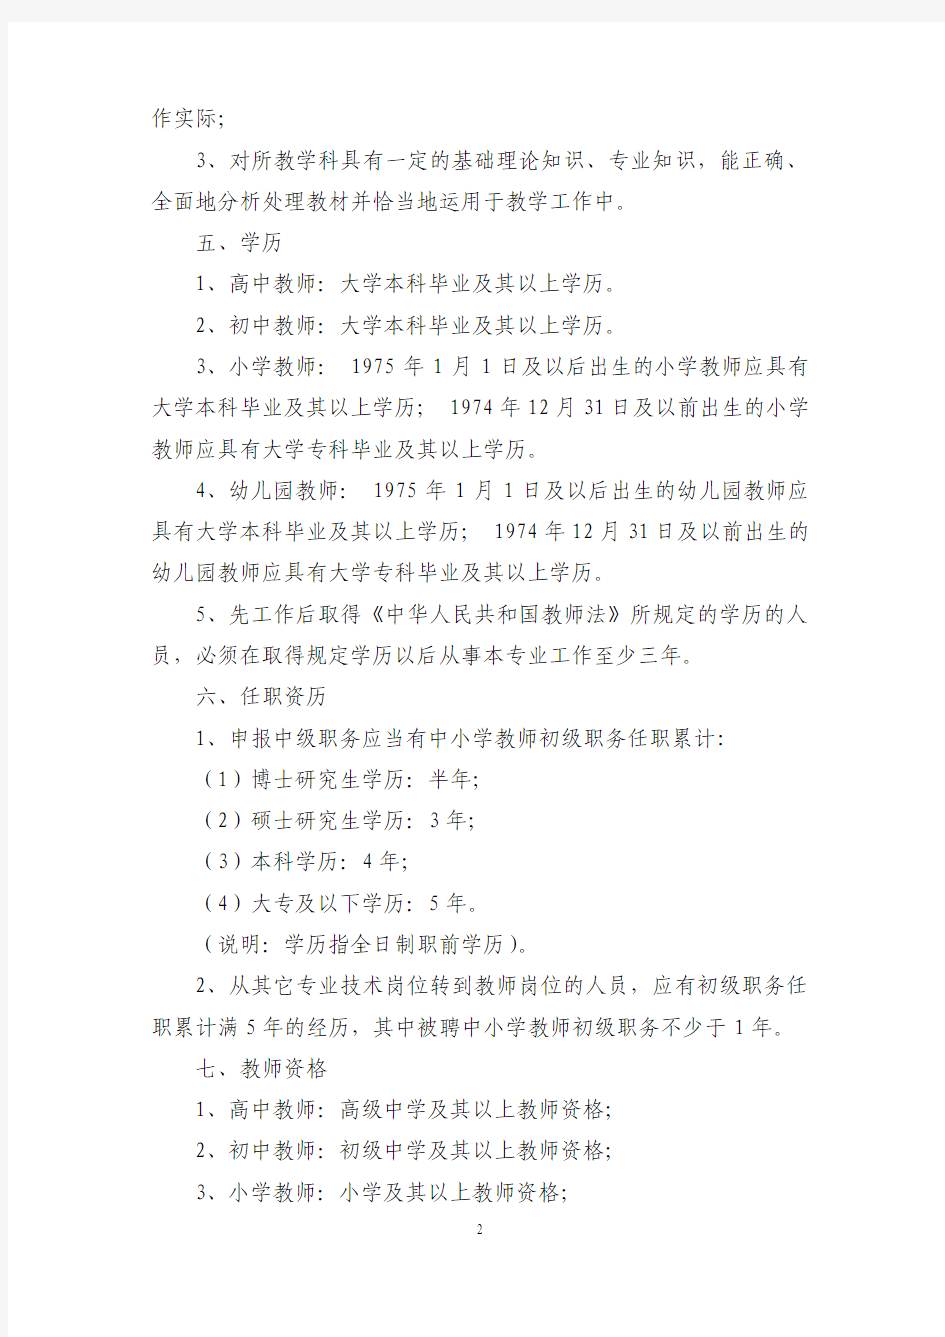 上海市宝山区教育局关于本区中小学教师中级职务评聘条件的规定